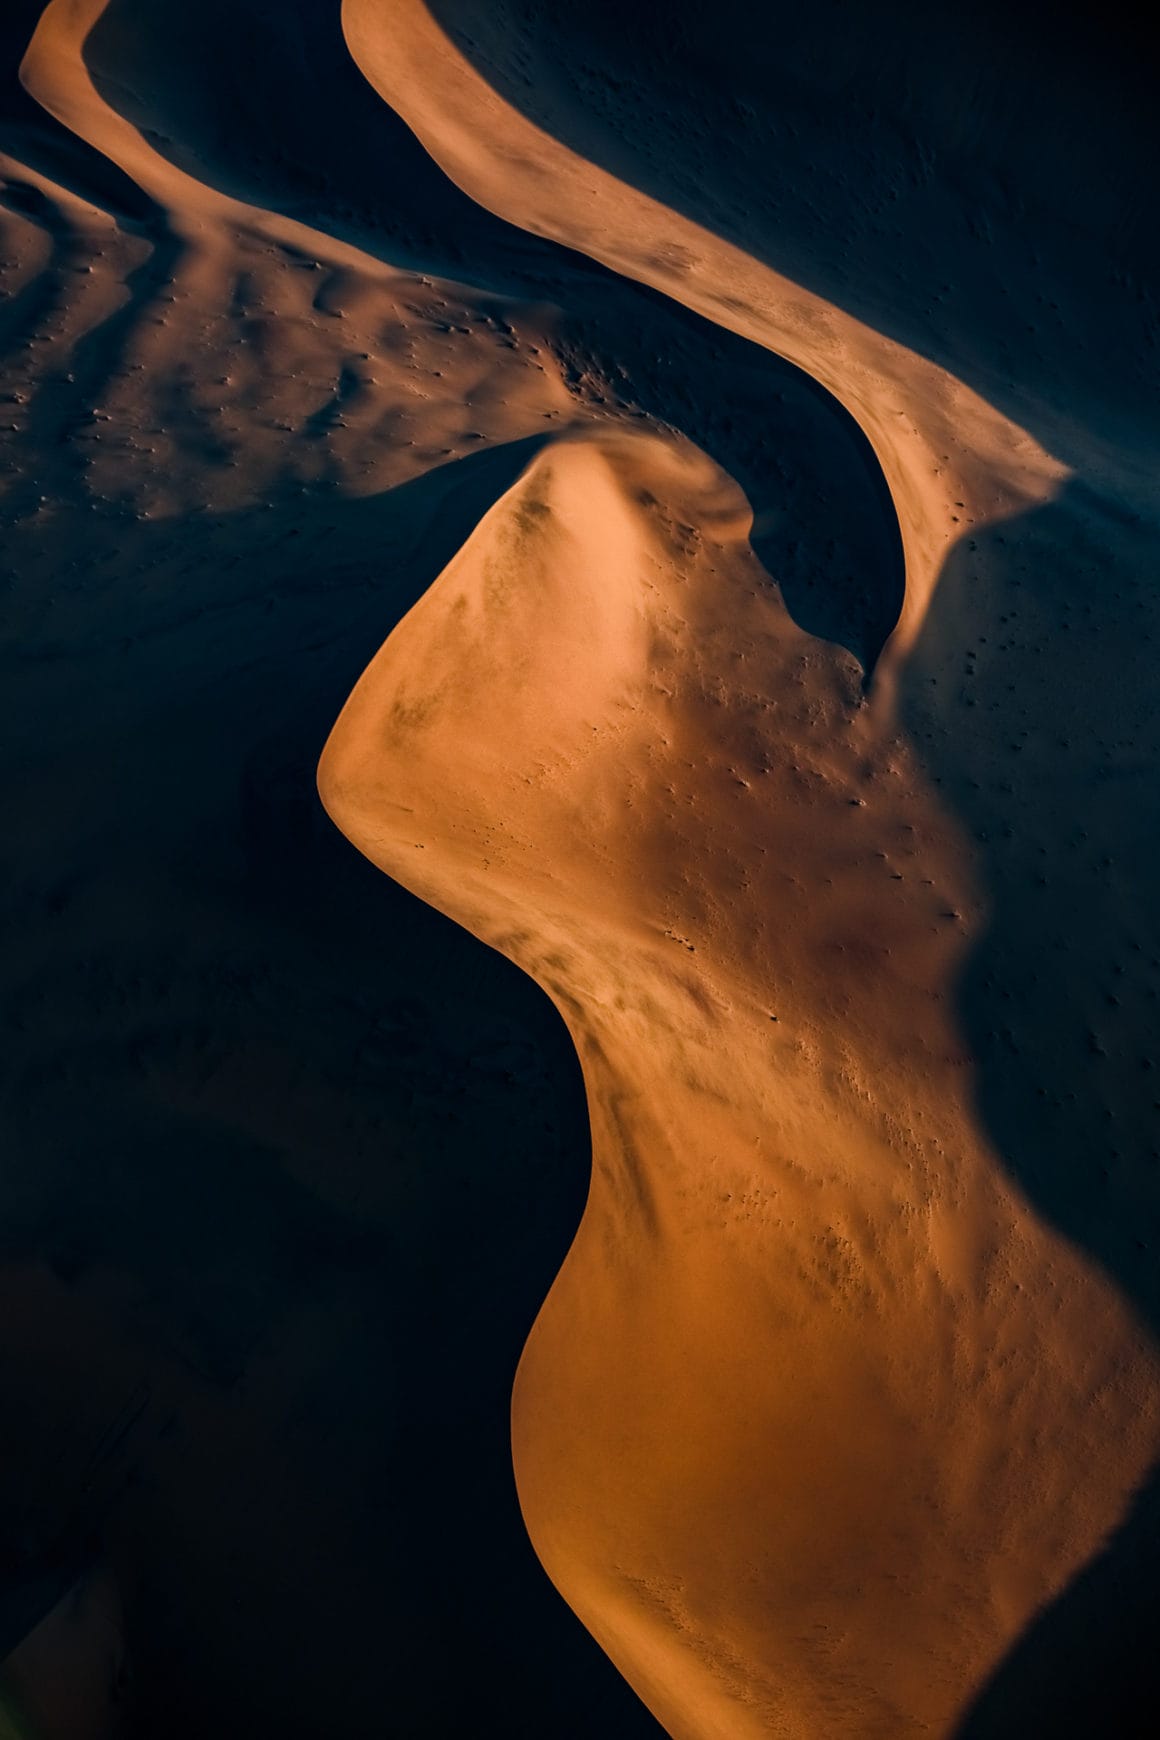 Dunes de sable de Namibie aux allures de courbes féminines éclairées par le soleil couchant